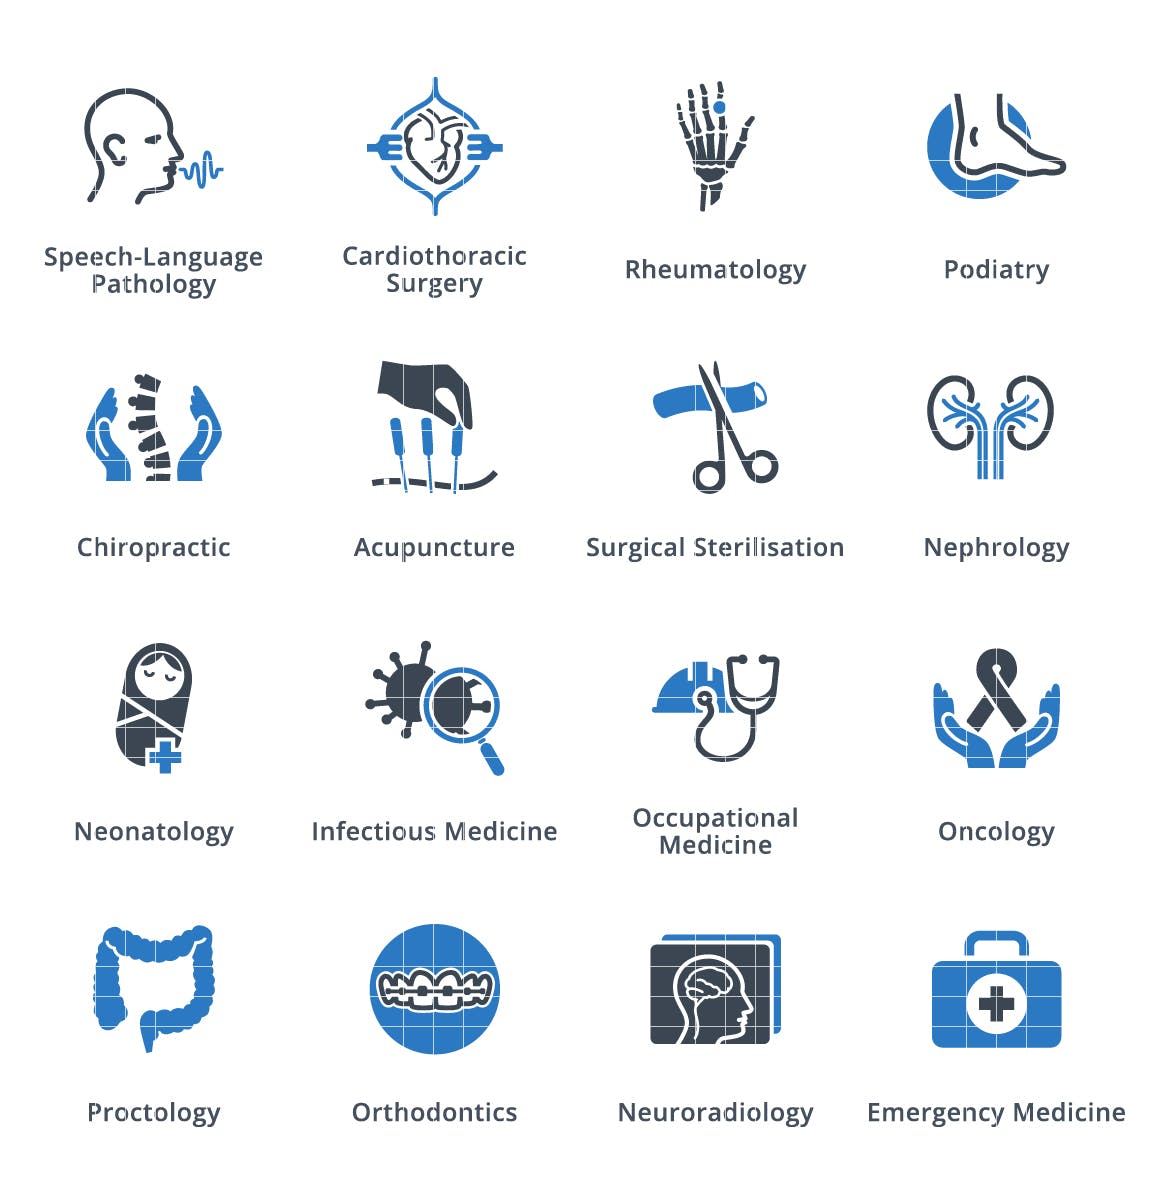 医疗服务和特色矢量素材库精选图标素材v4 Medical Services & Specialties Icons – Set 4插图(1)